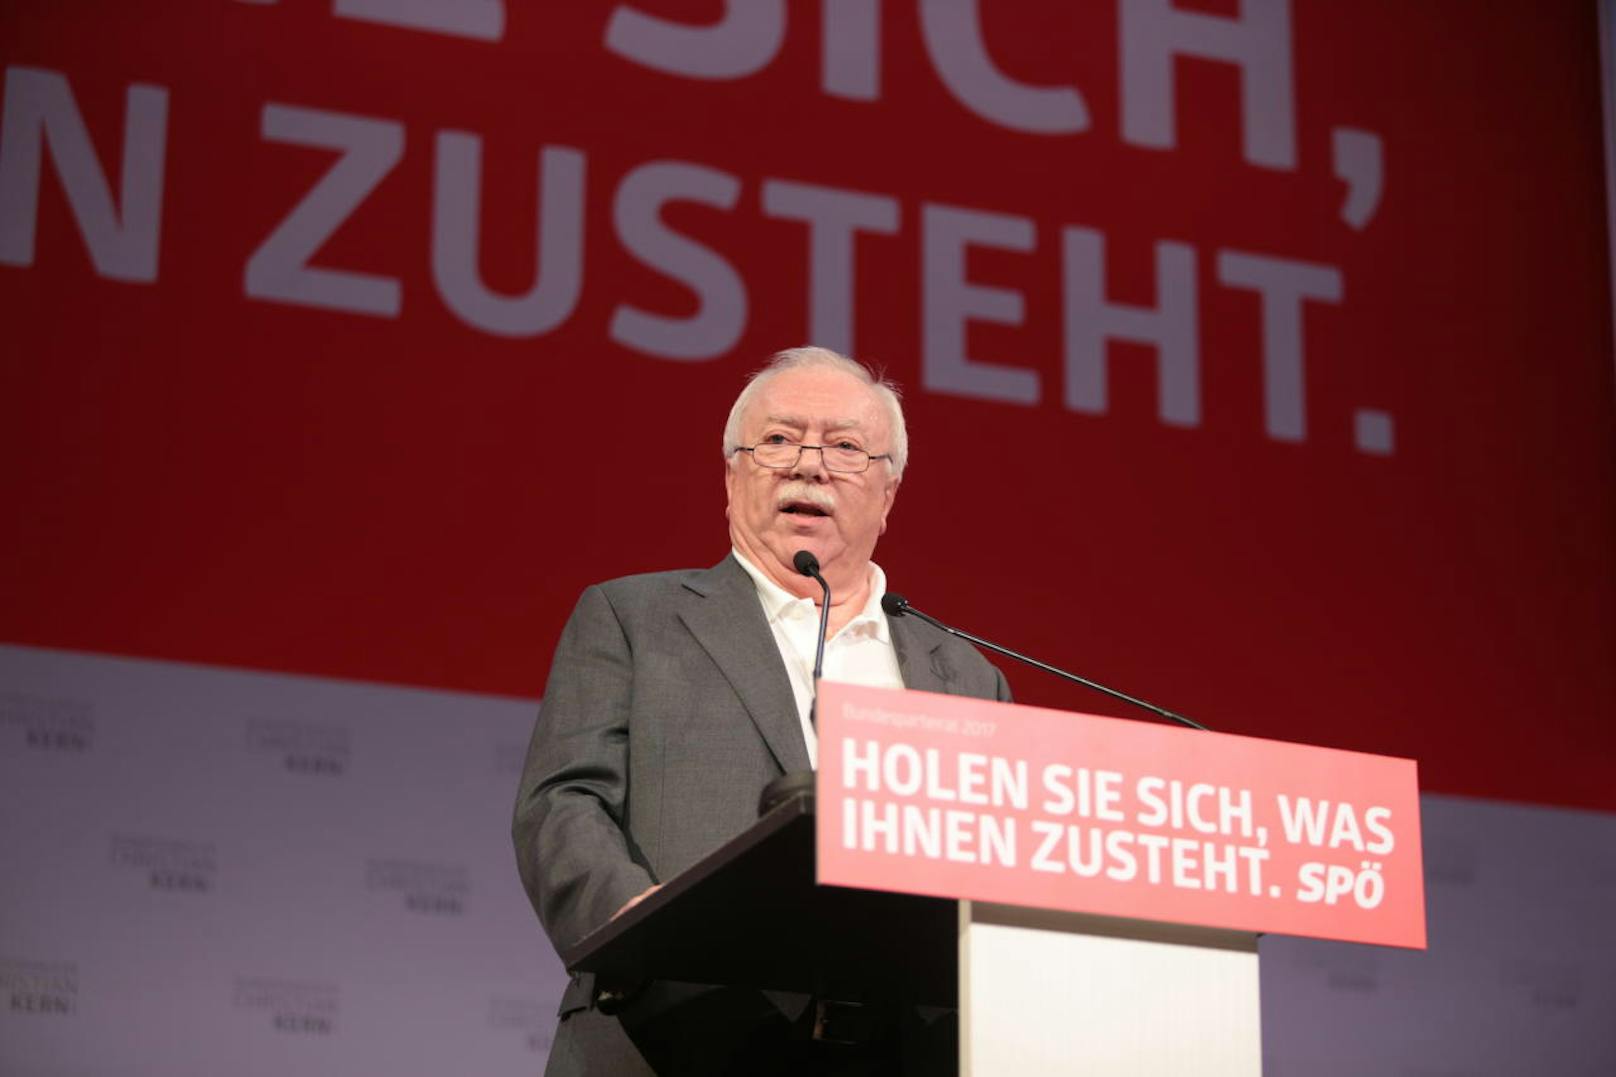 Wiens Bürgermeister und SPÖ-Landeschef Michael Häupl schoss scharf gegen ÖVP-Chef Sebastian Kurz